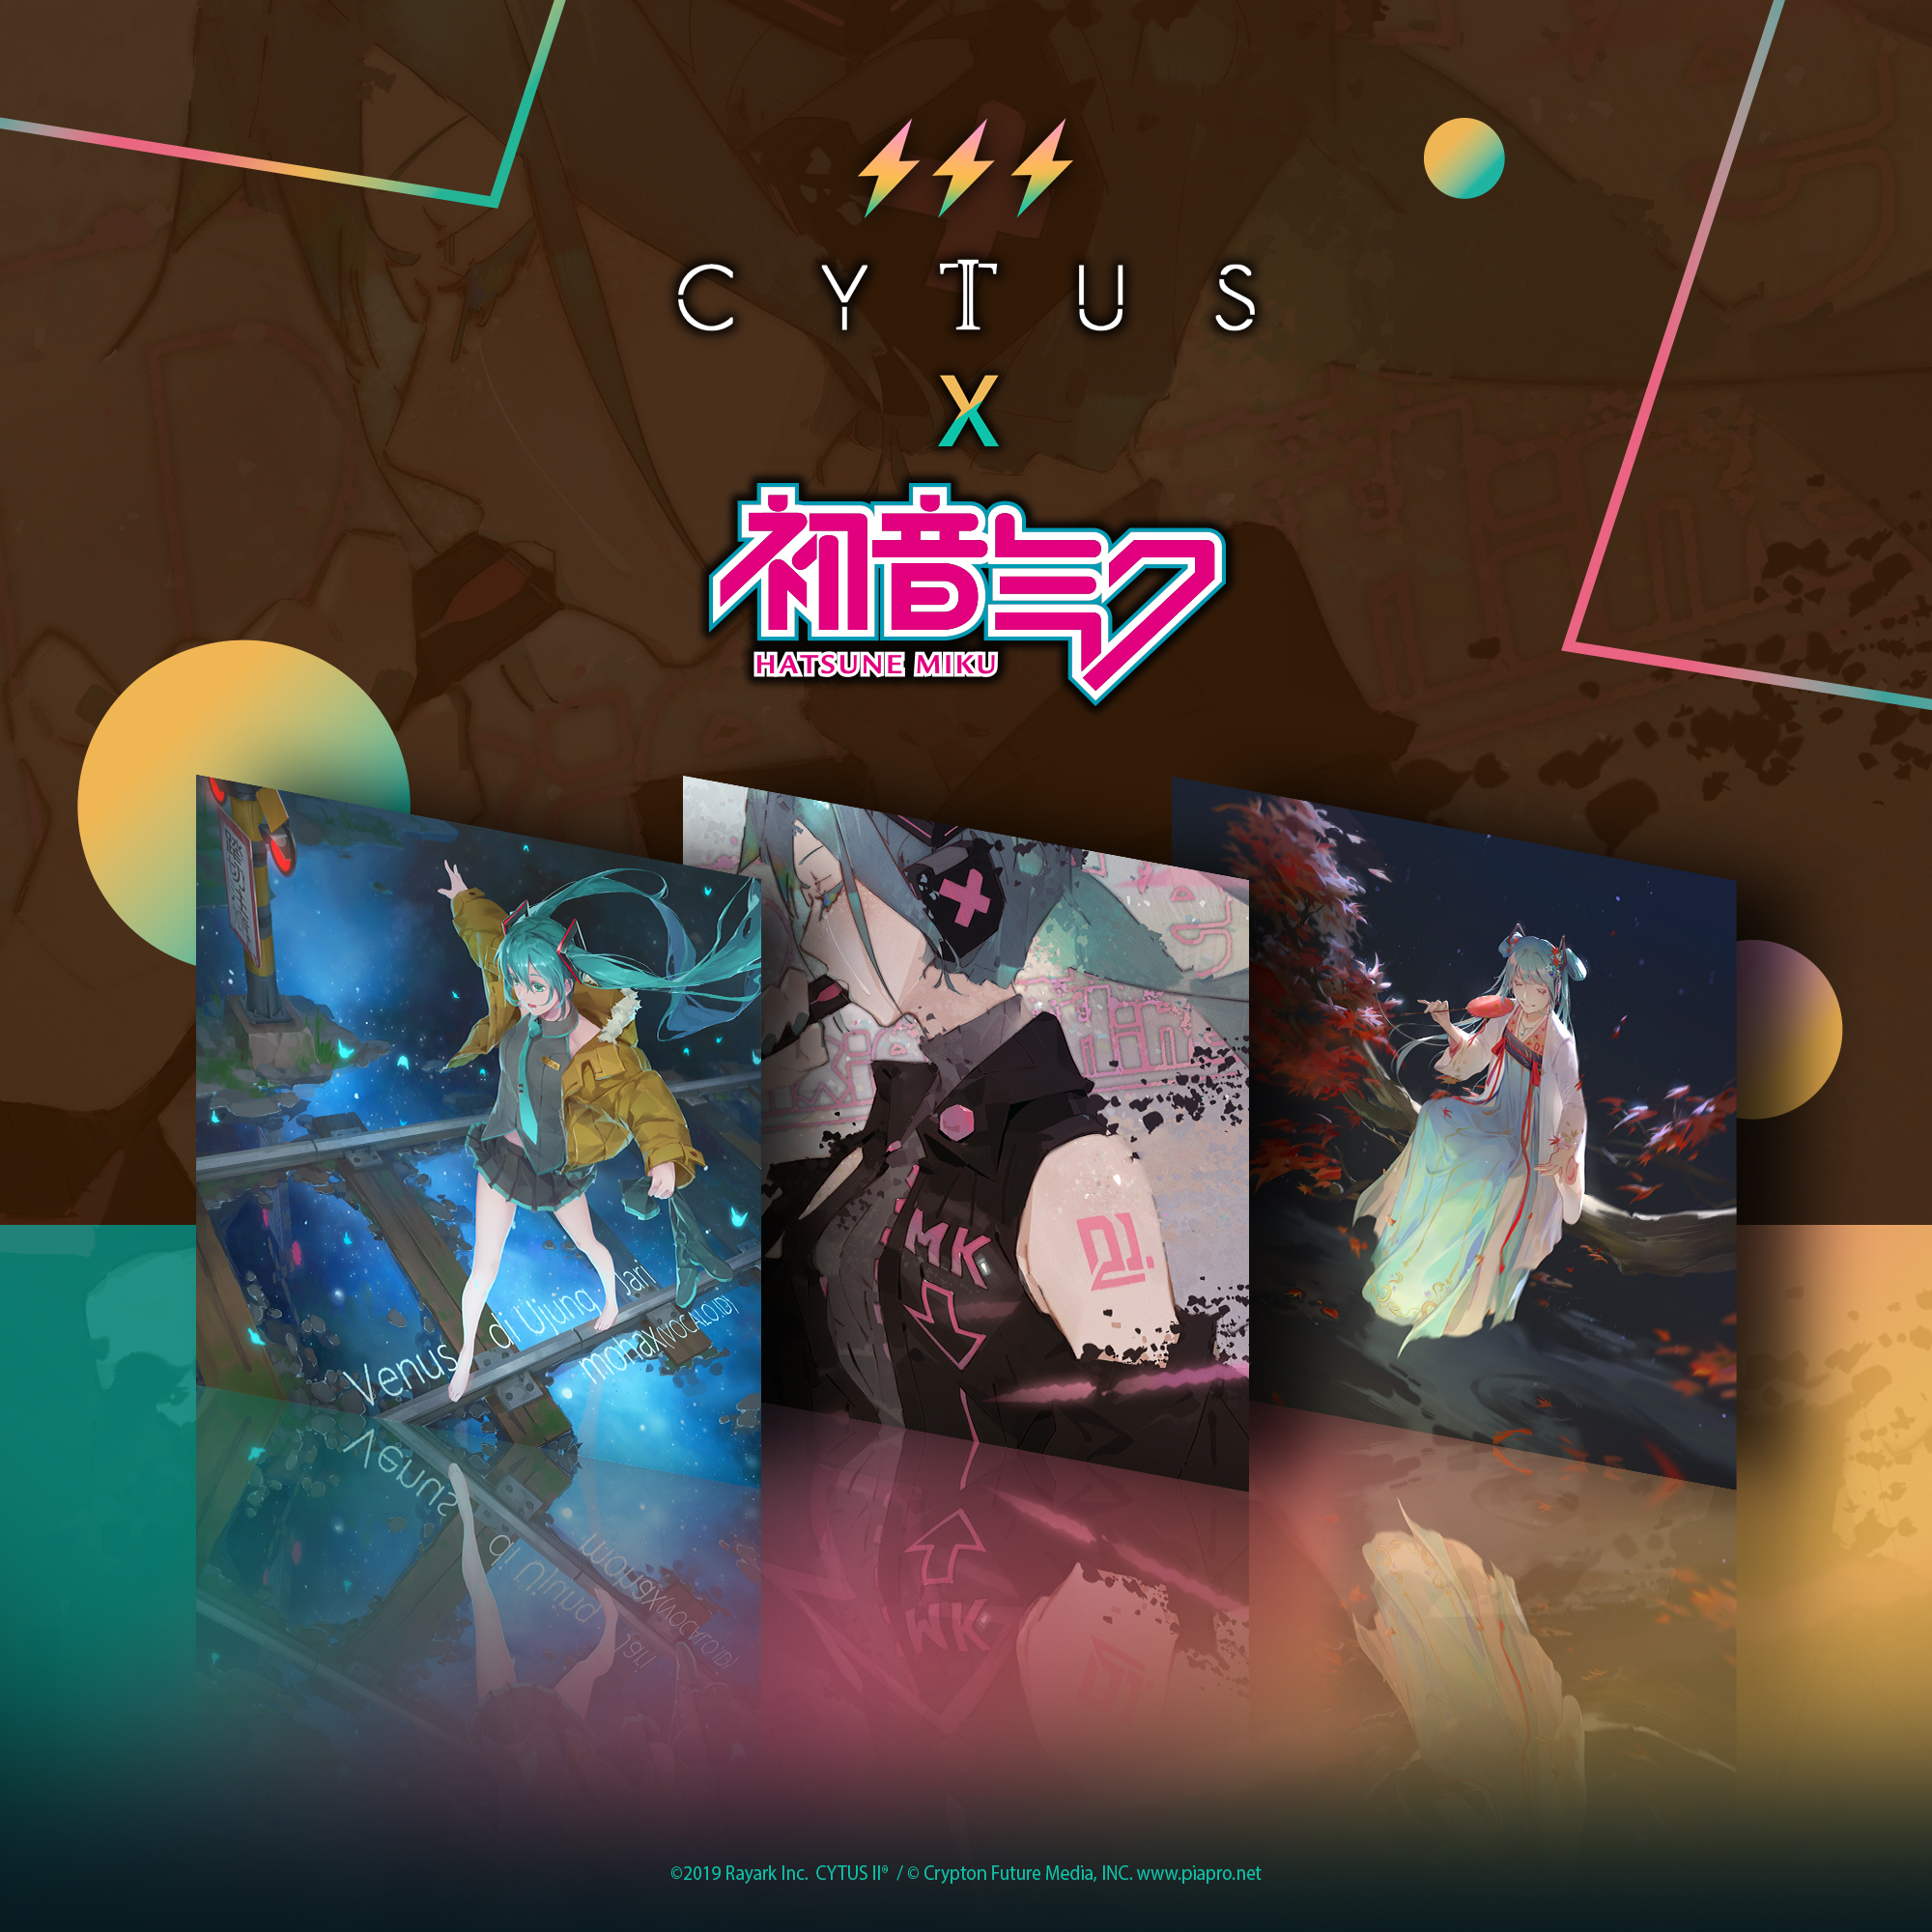 Cytus II X Hatsune Miku 收录歌曲预告